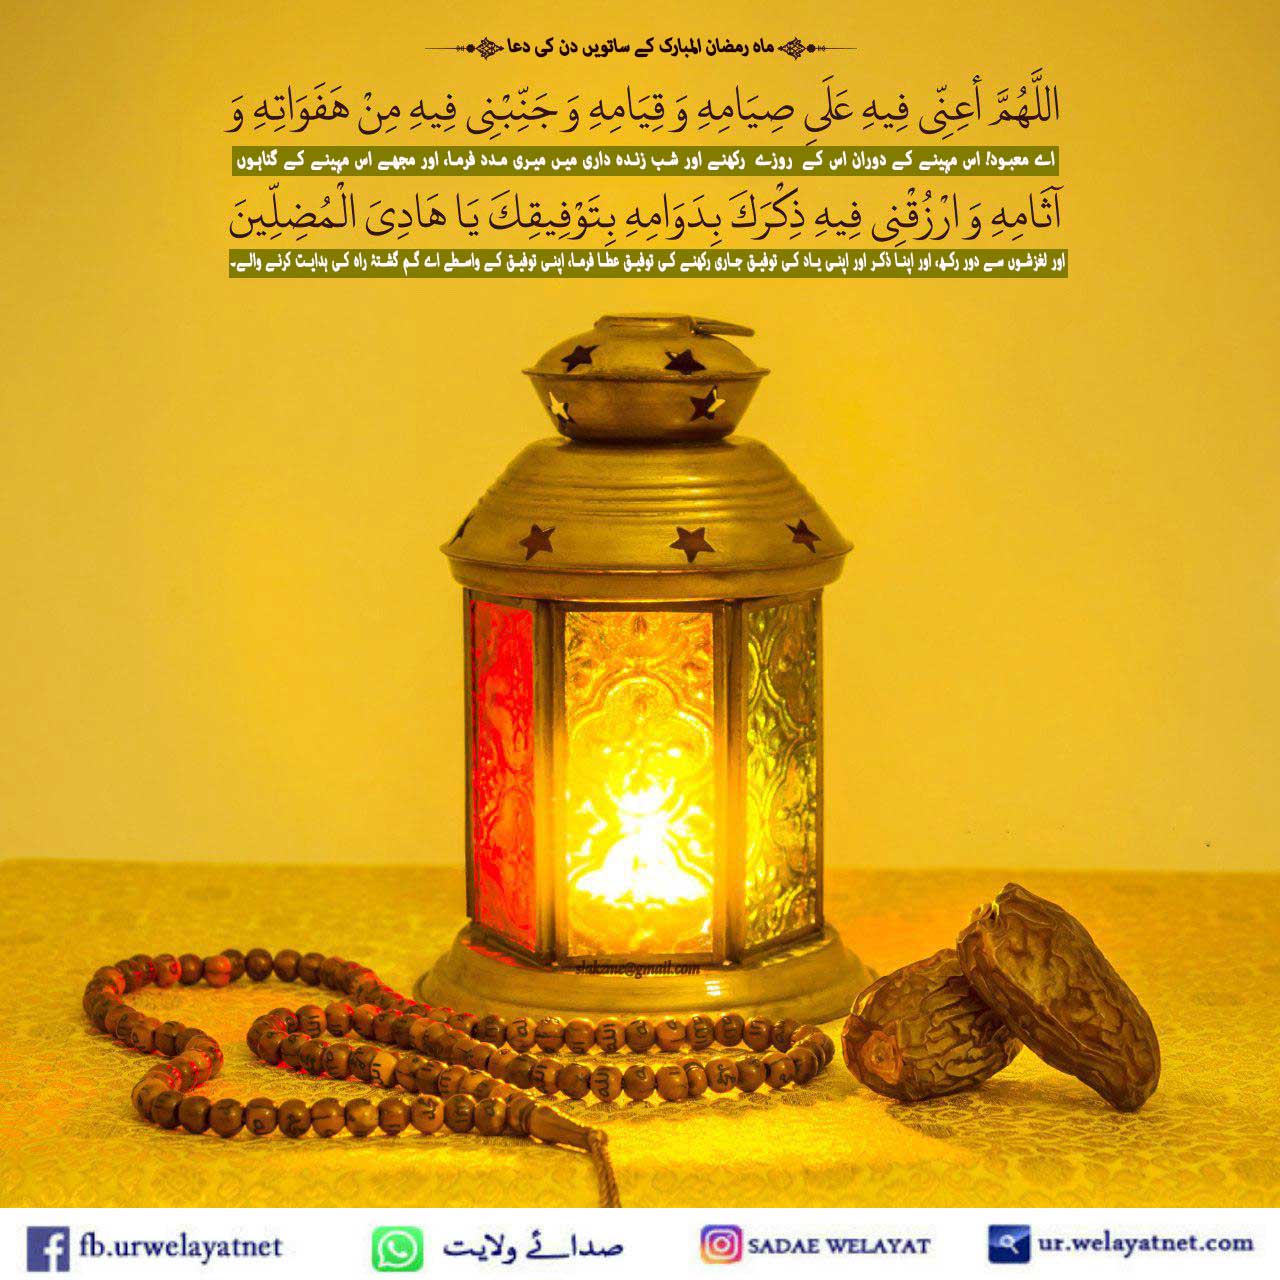 ماہ رمضان المبارک کے ساتویں دن کی دعااور دعائیہ فقرات کی مختصر تشریح